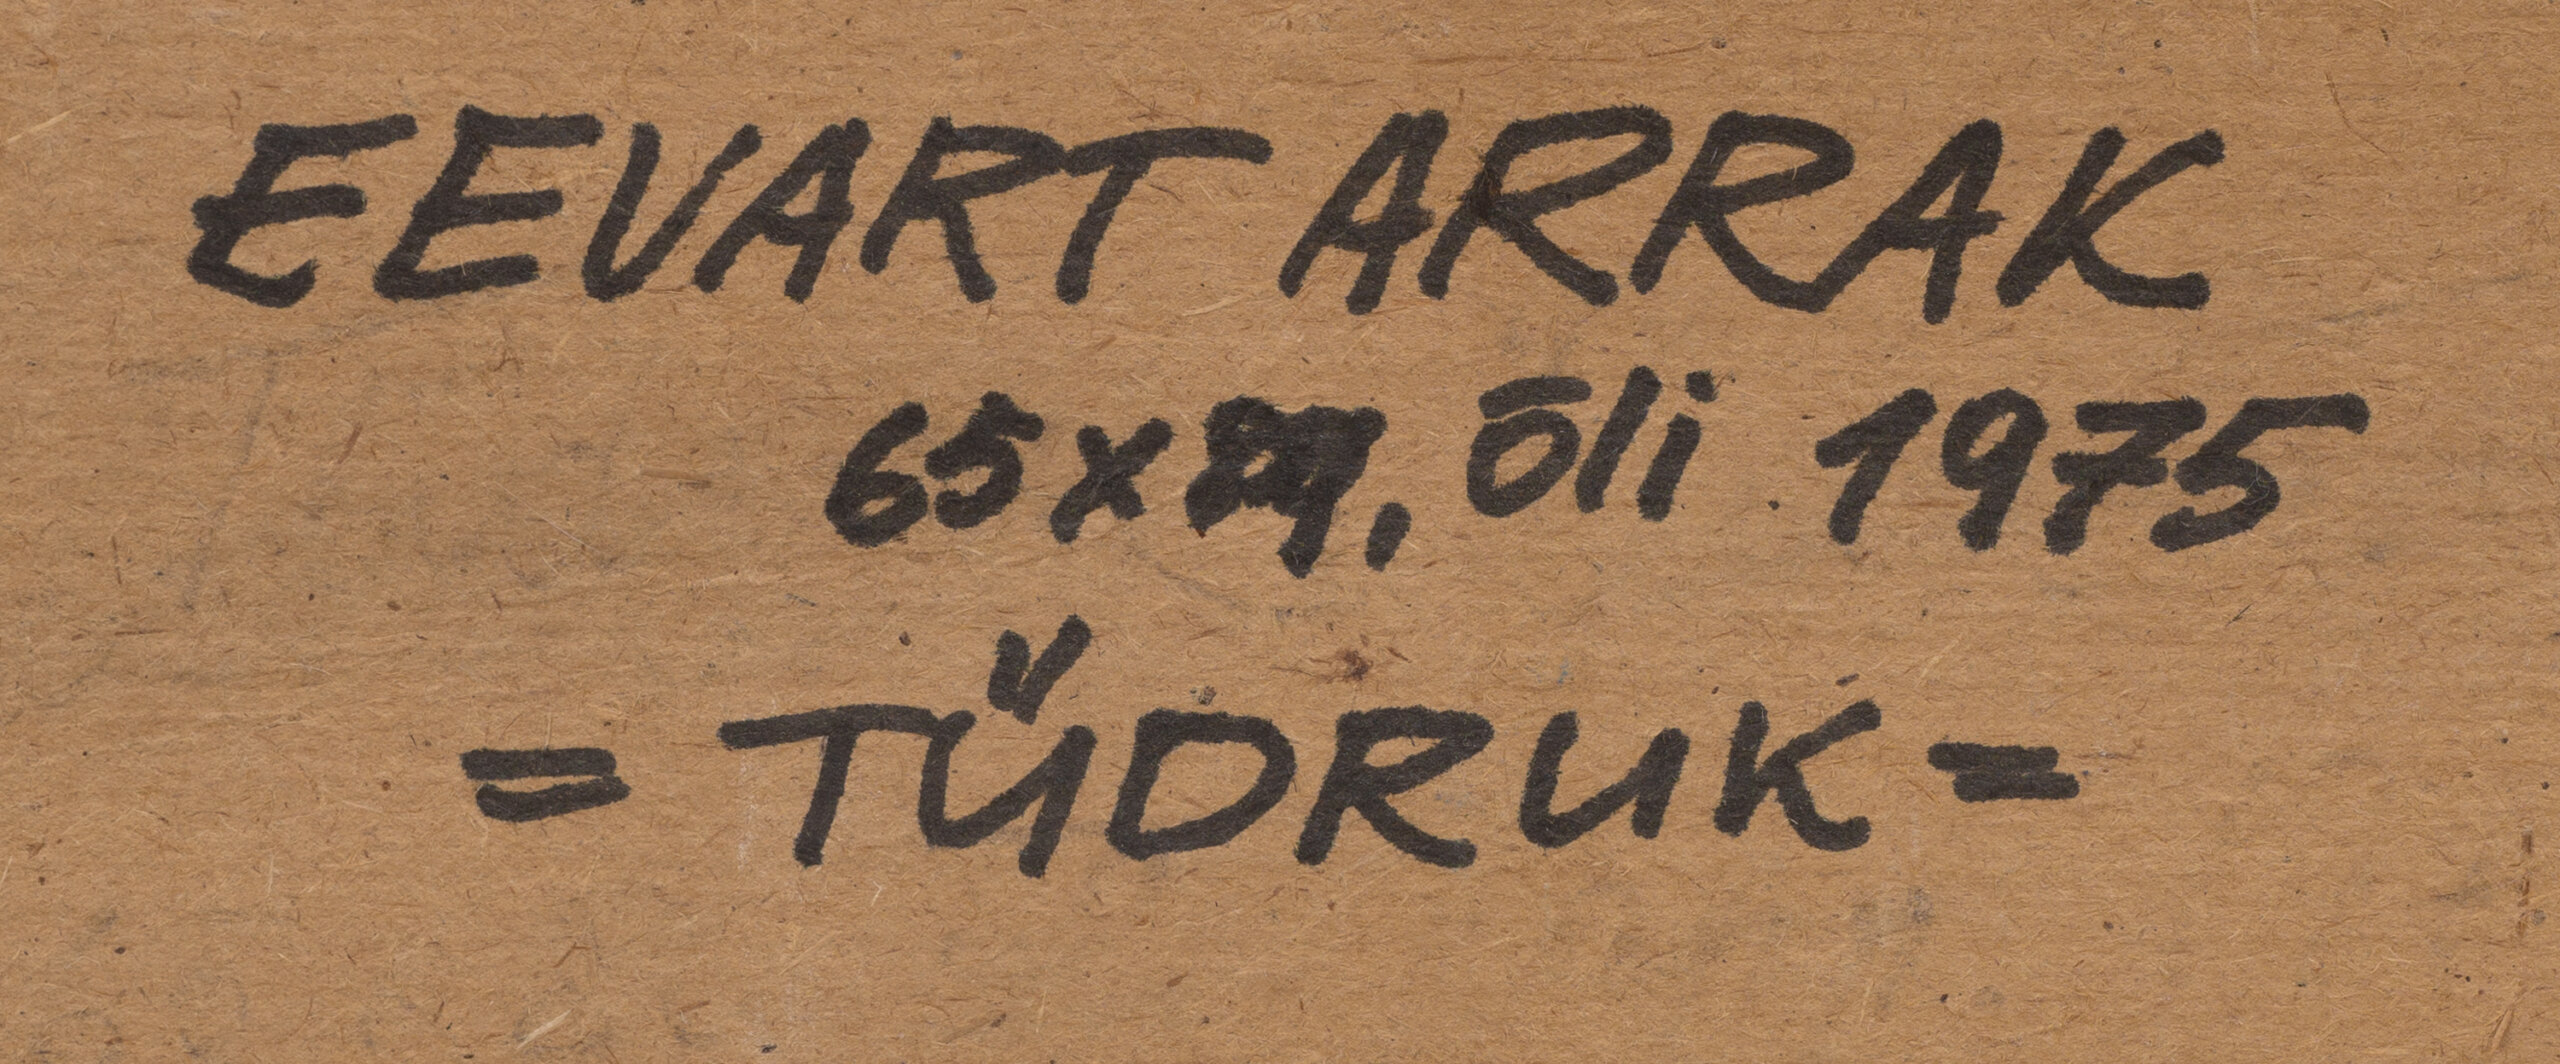 Eevart Arrak “Tüdruk”, 1975. 65 x 81 cm.